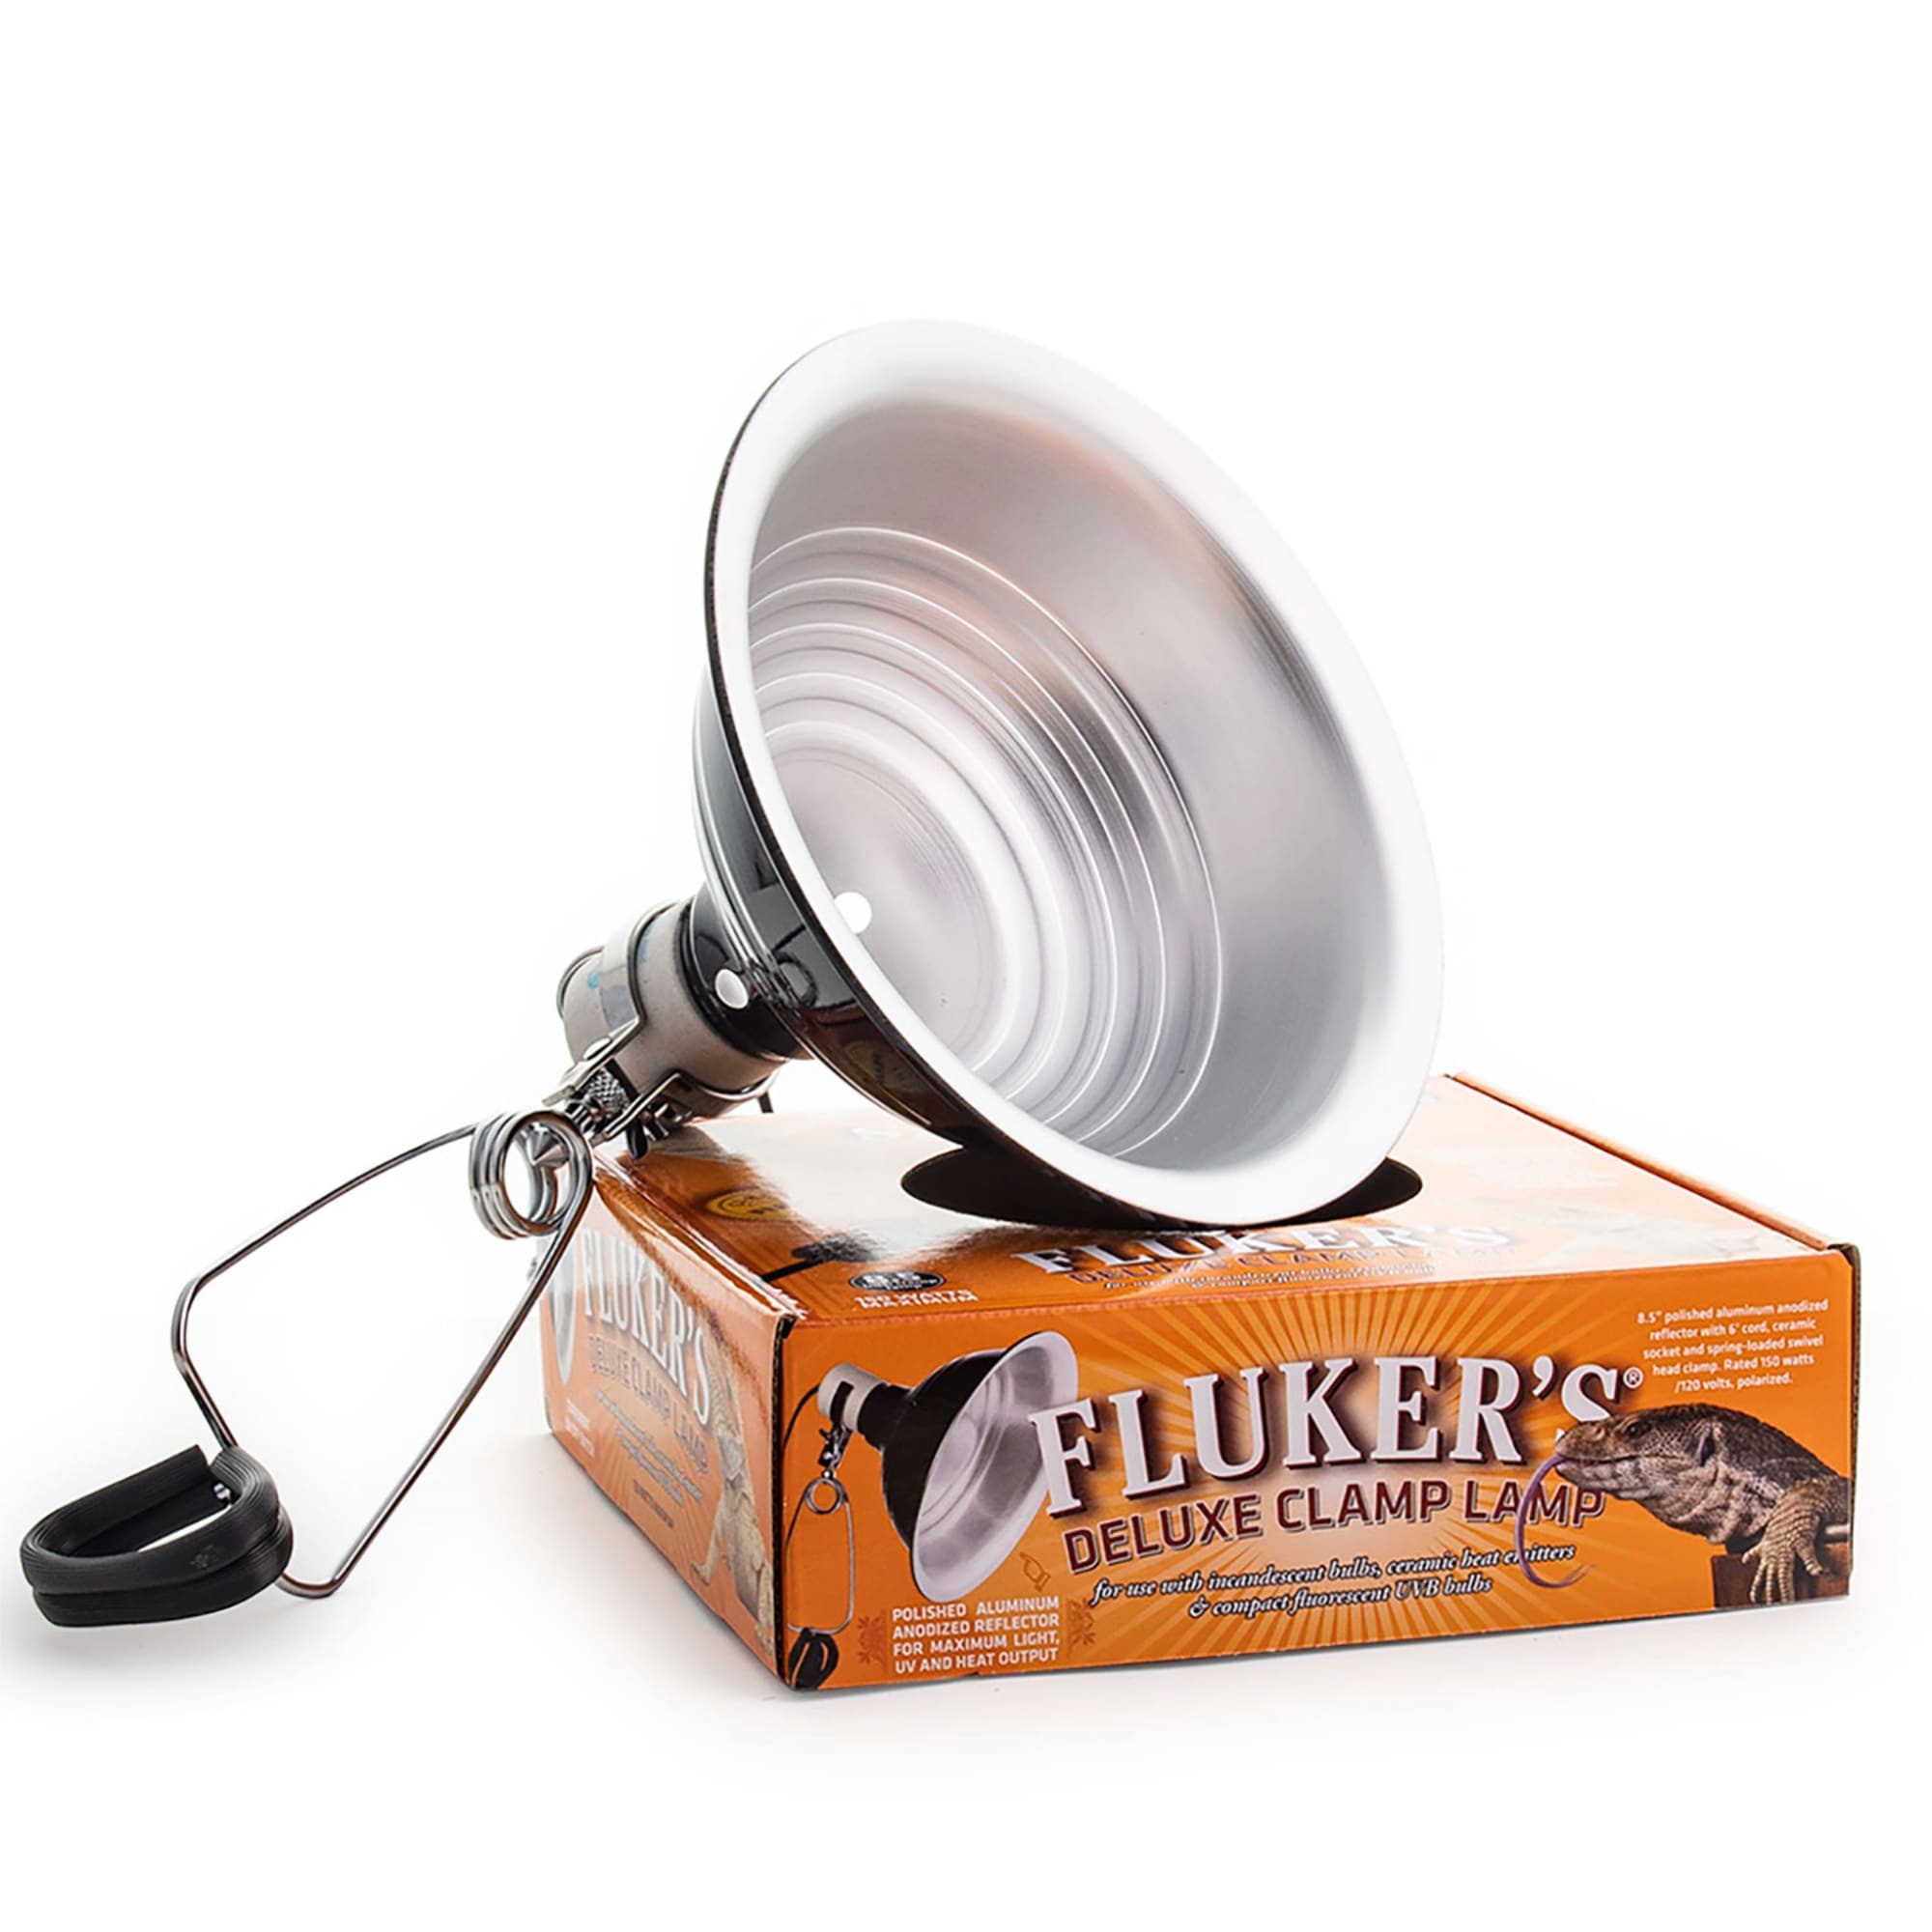 Photos - Other for Aquariums Flukers Fluker's Fluker's Clamp Lamp - 150W; 8.5", 150 W 27000 